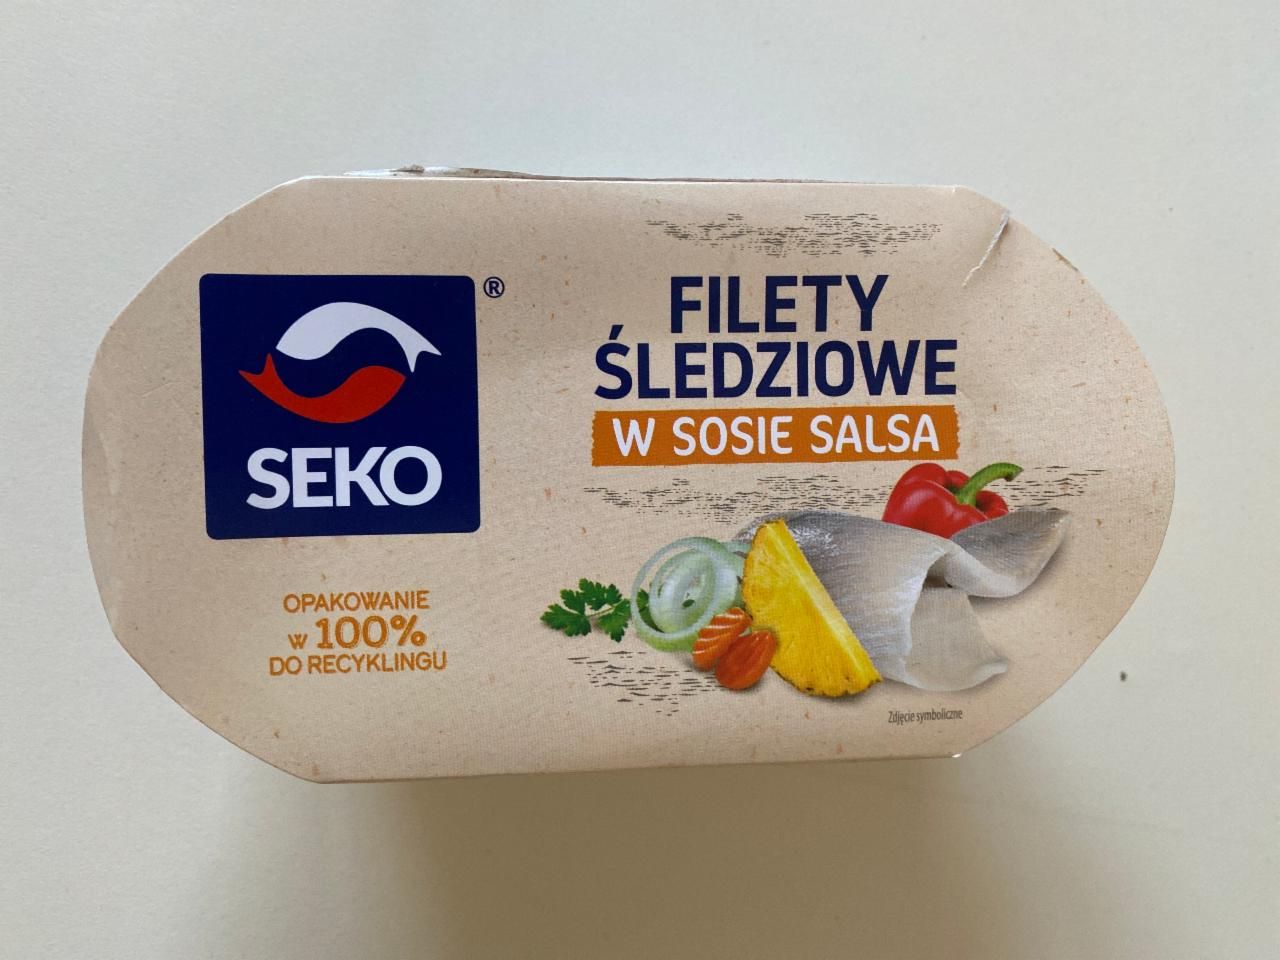 Zdjęcia - Filety śledziowe w sosie salsa Seko